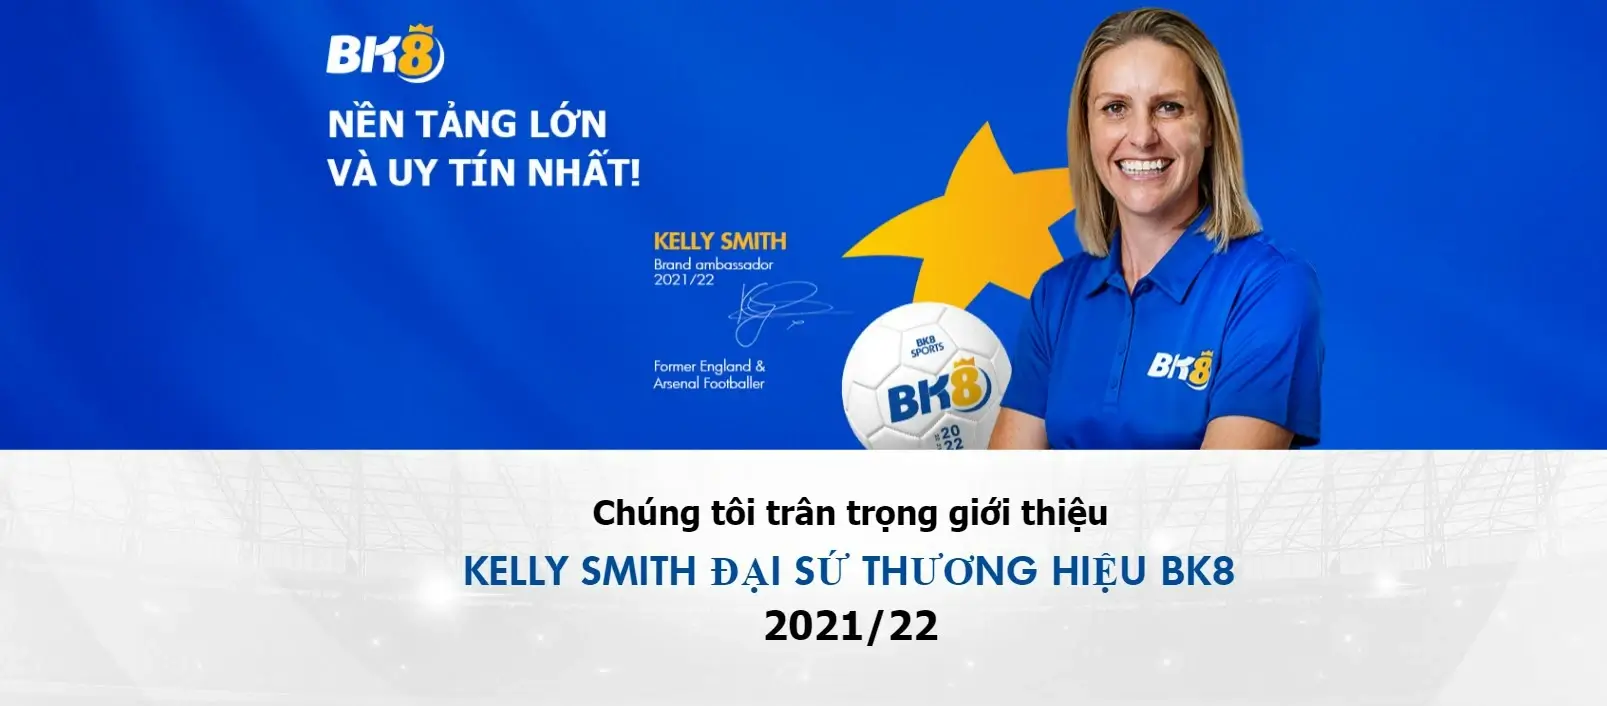 BK8 ký hợp đồng đại sứ với Kelly Smith 